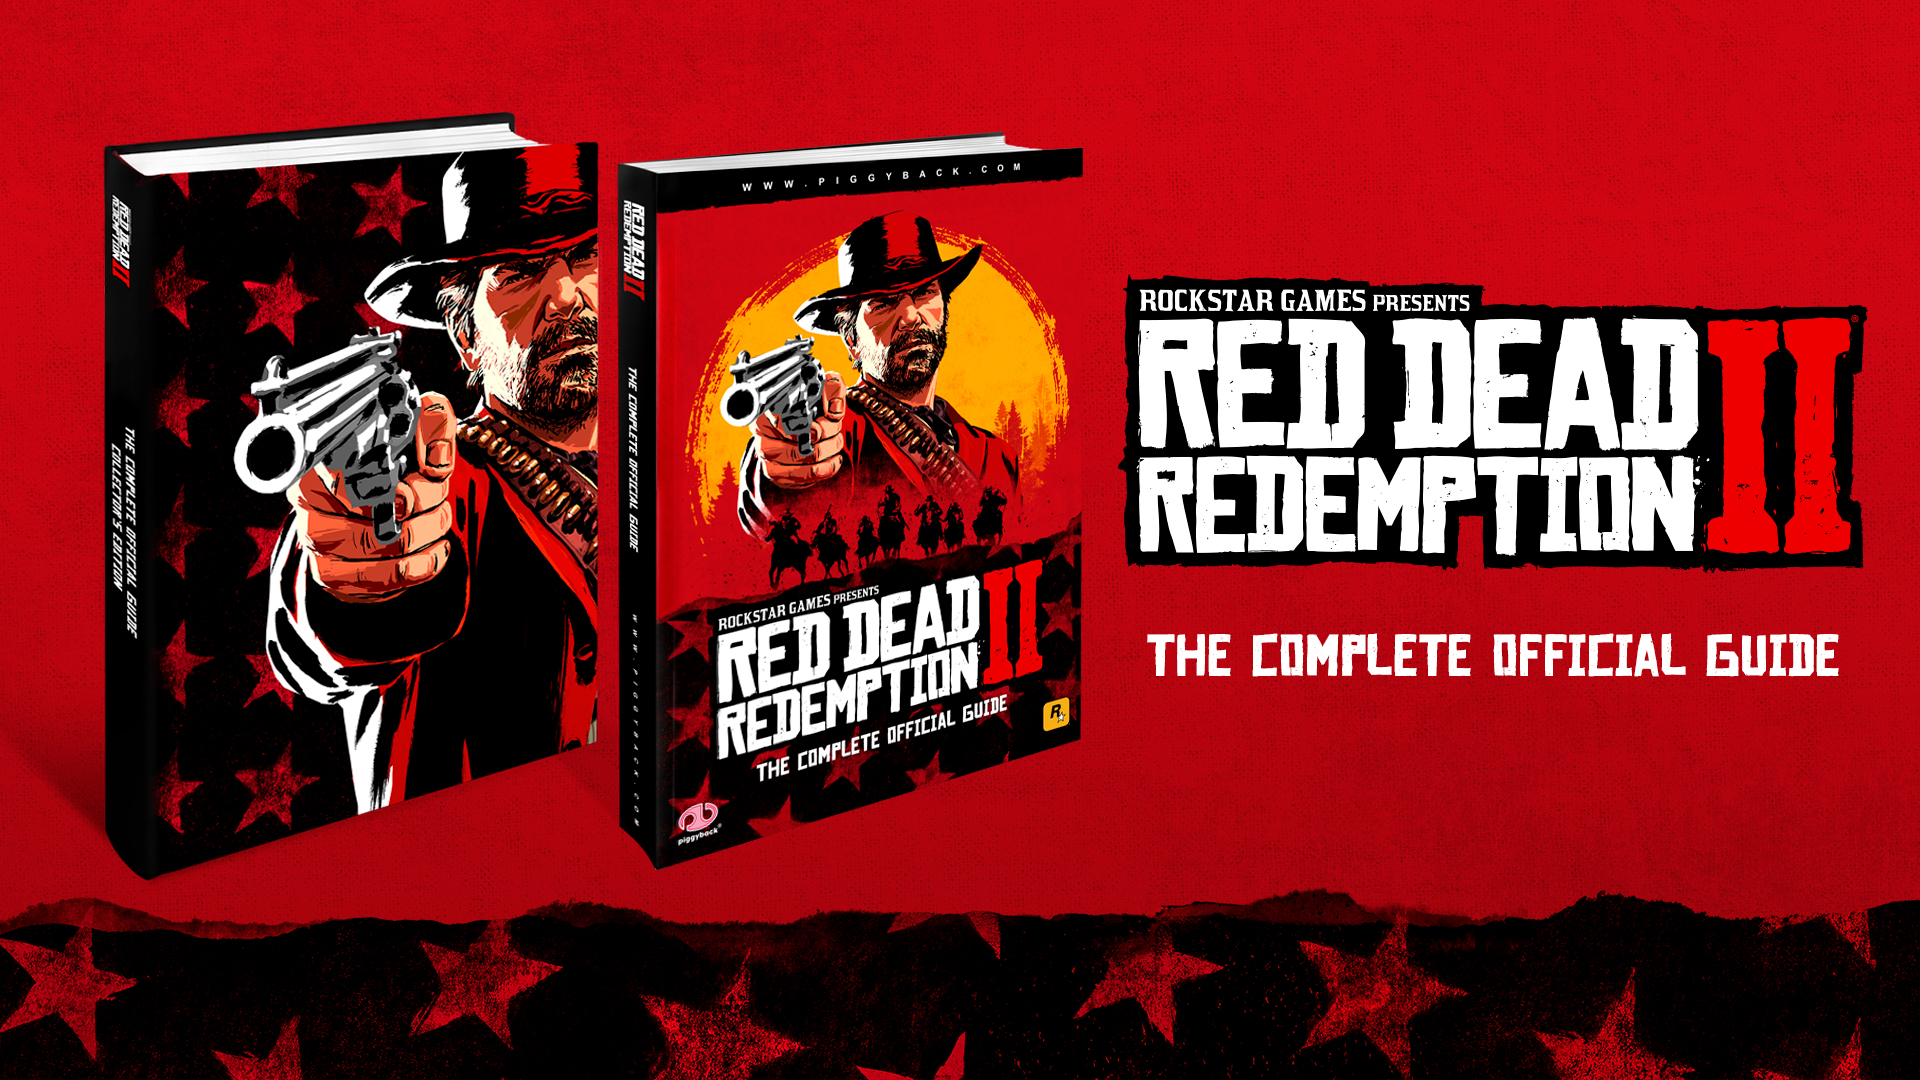 undertøj protektor kapitel Pre-Order the Red Dead Redemption 2 Complete Official Guide - Rockstar Games